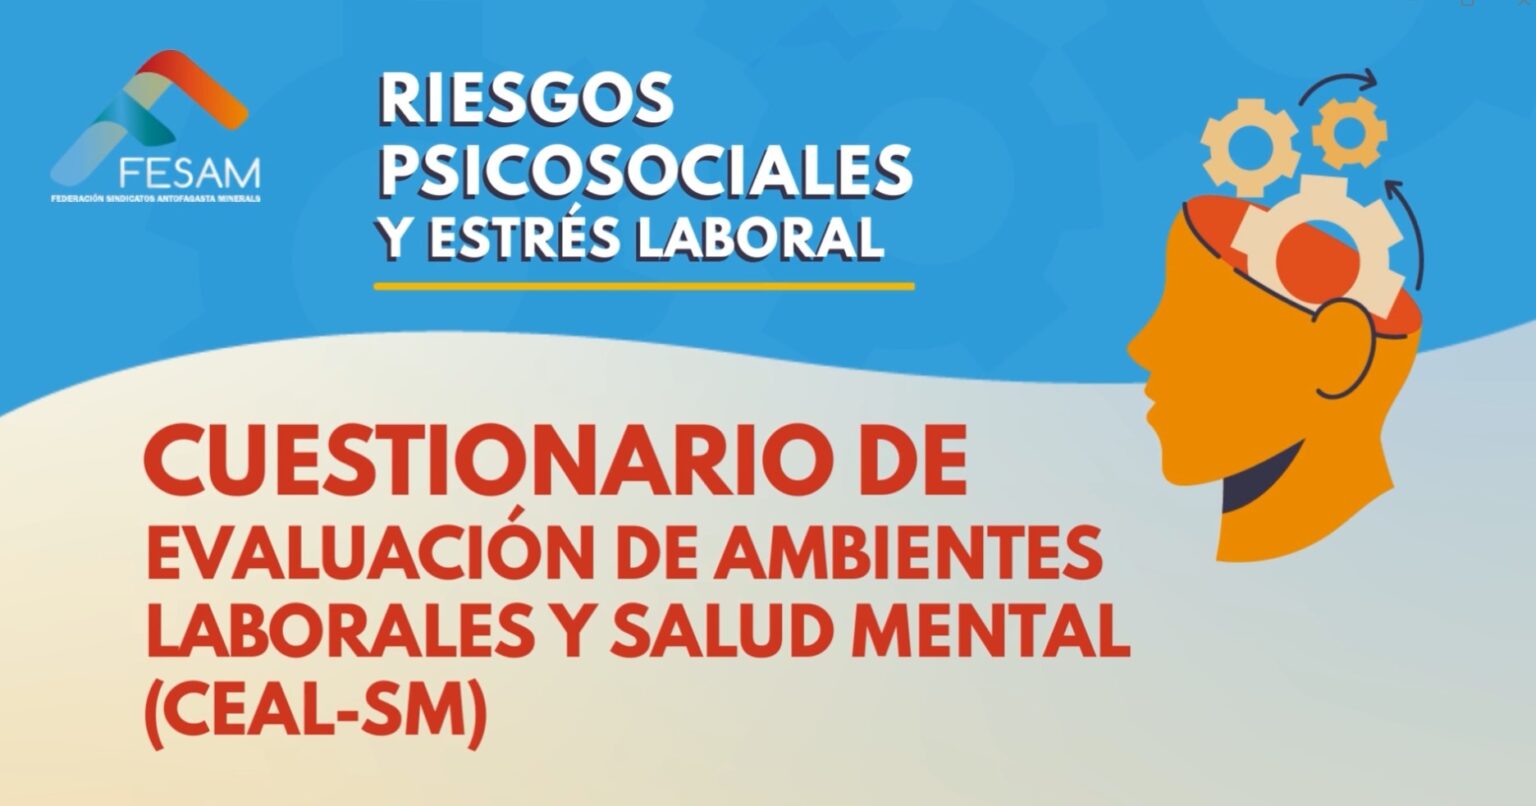 CAMPAÑA DE RIESGOS PSICOSOCIALES EN EL TRABAJO – CUESTIONARIO CEAL – SM